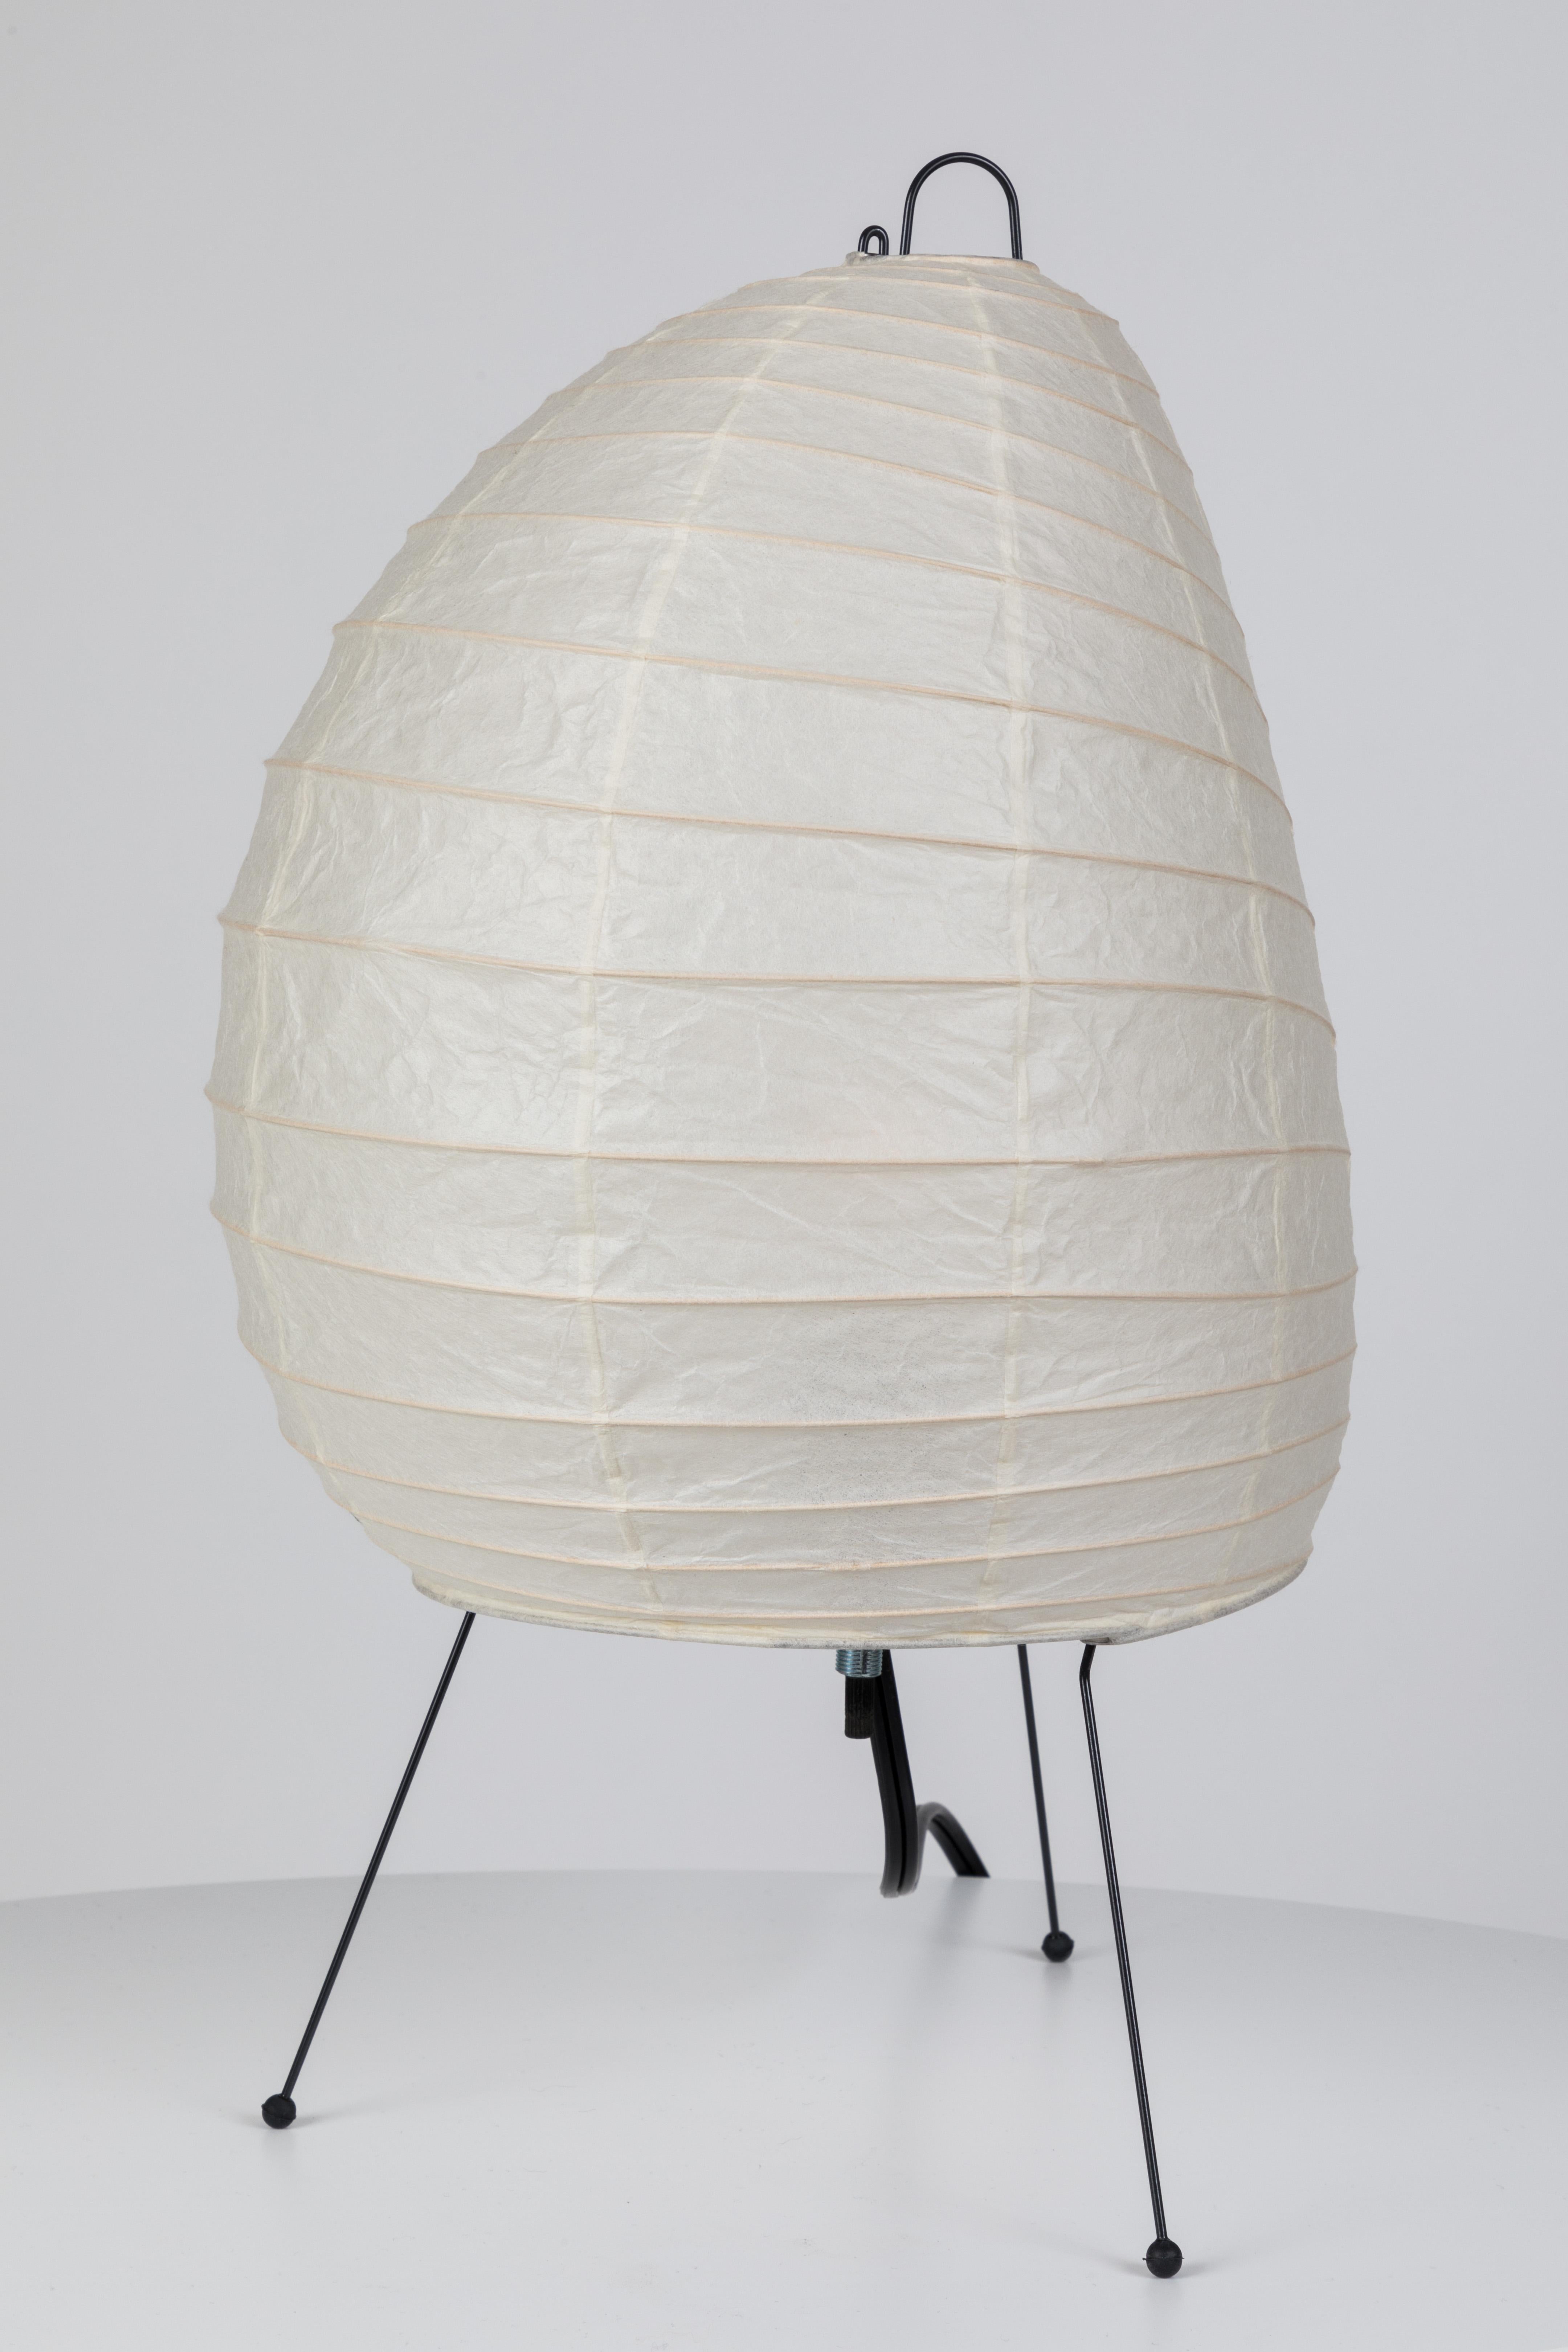 Akari Modell 1A Lichtskulptur von Isamu Noguchi. Der Schirm ist aus handgeschöpftem Washi-Papier und Bambusrippen mit dem Herstellerstempel von Noguchi Akari gefertigt. Die Akari-Lichtskulpturen von Isamu Noguchi gelten als Ikonen des modernen